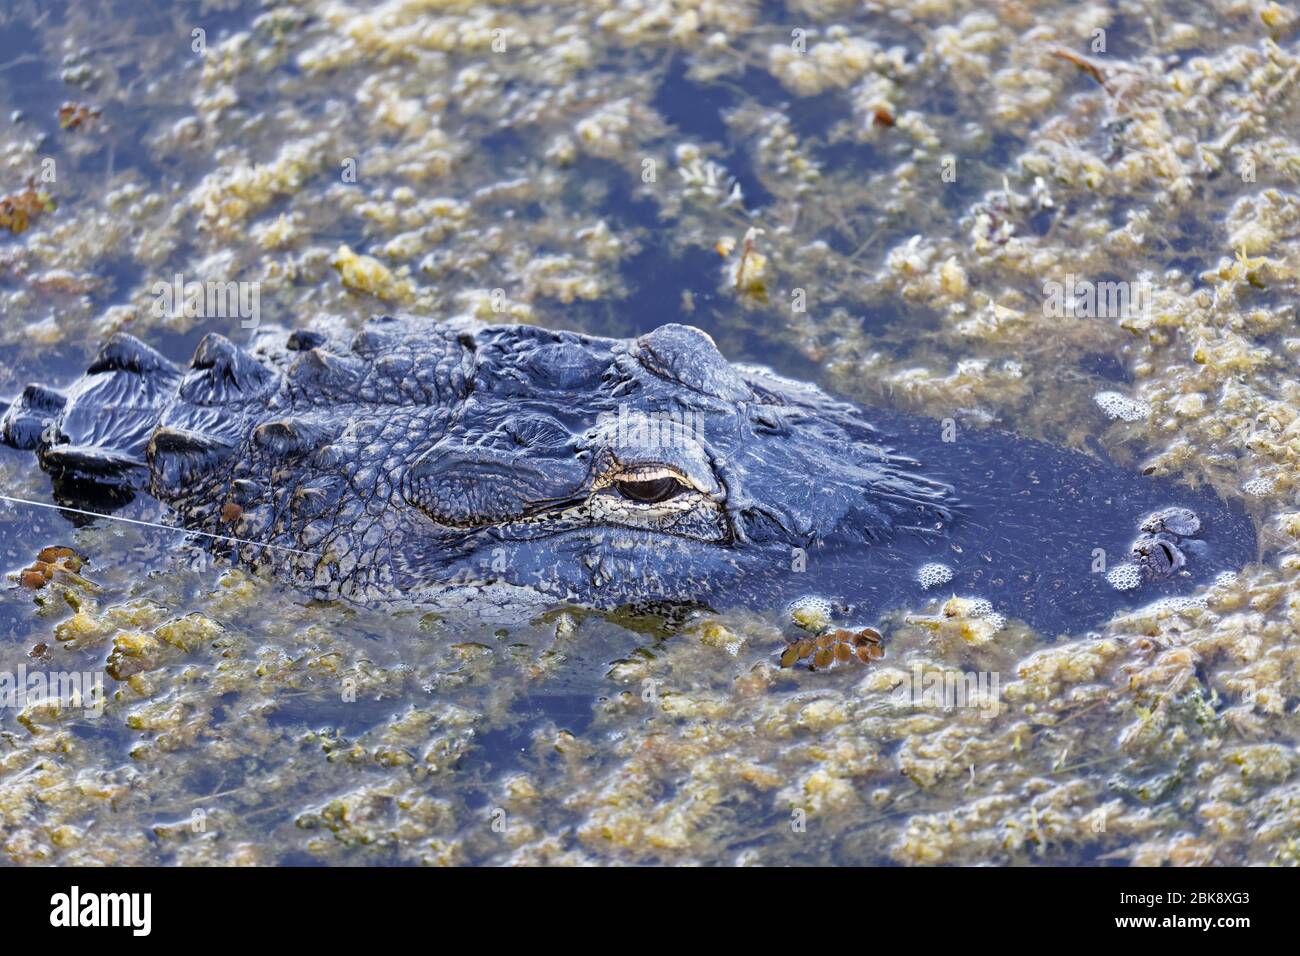 Nahaufnahme eines wilden amerikanischen Alligators (Alligator mississippiensis) zeigt Fischschnur aus seinen Kinnbacken, da dieser große Gator offenbar Haken war Stockfoto